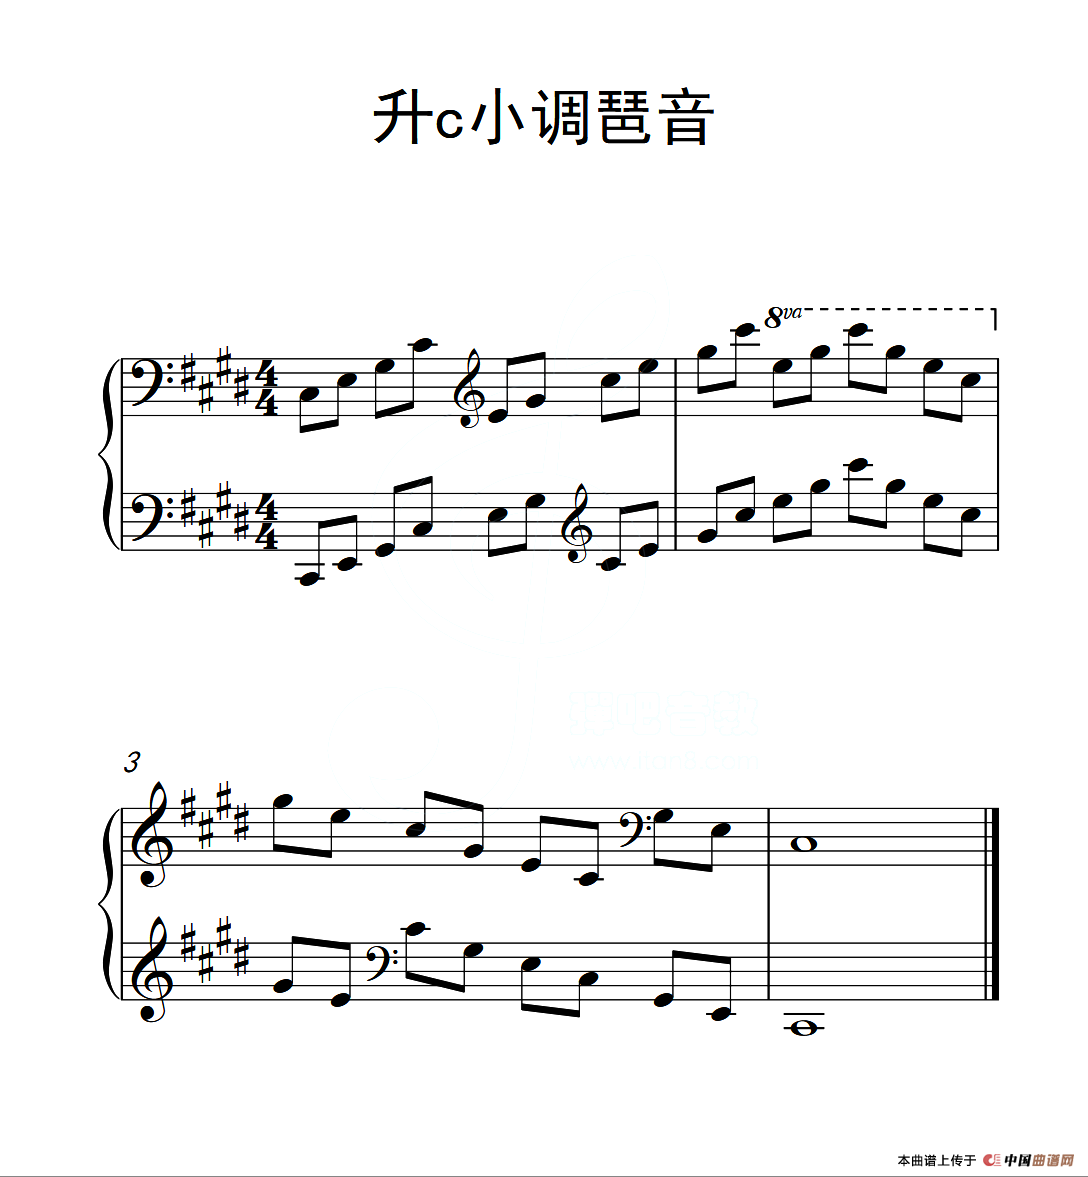 第四级 升c小调琶音（中国音乐学院钢琴考级作品